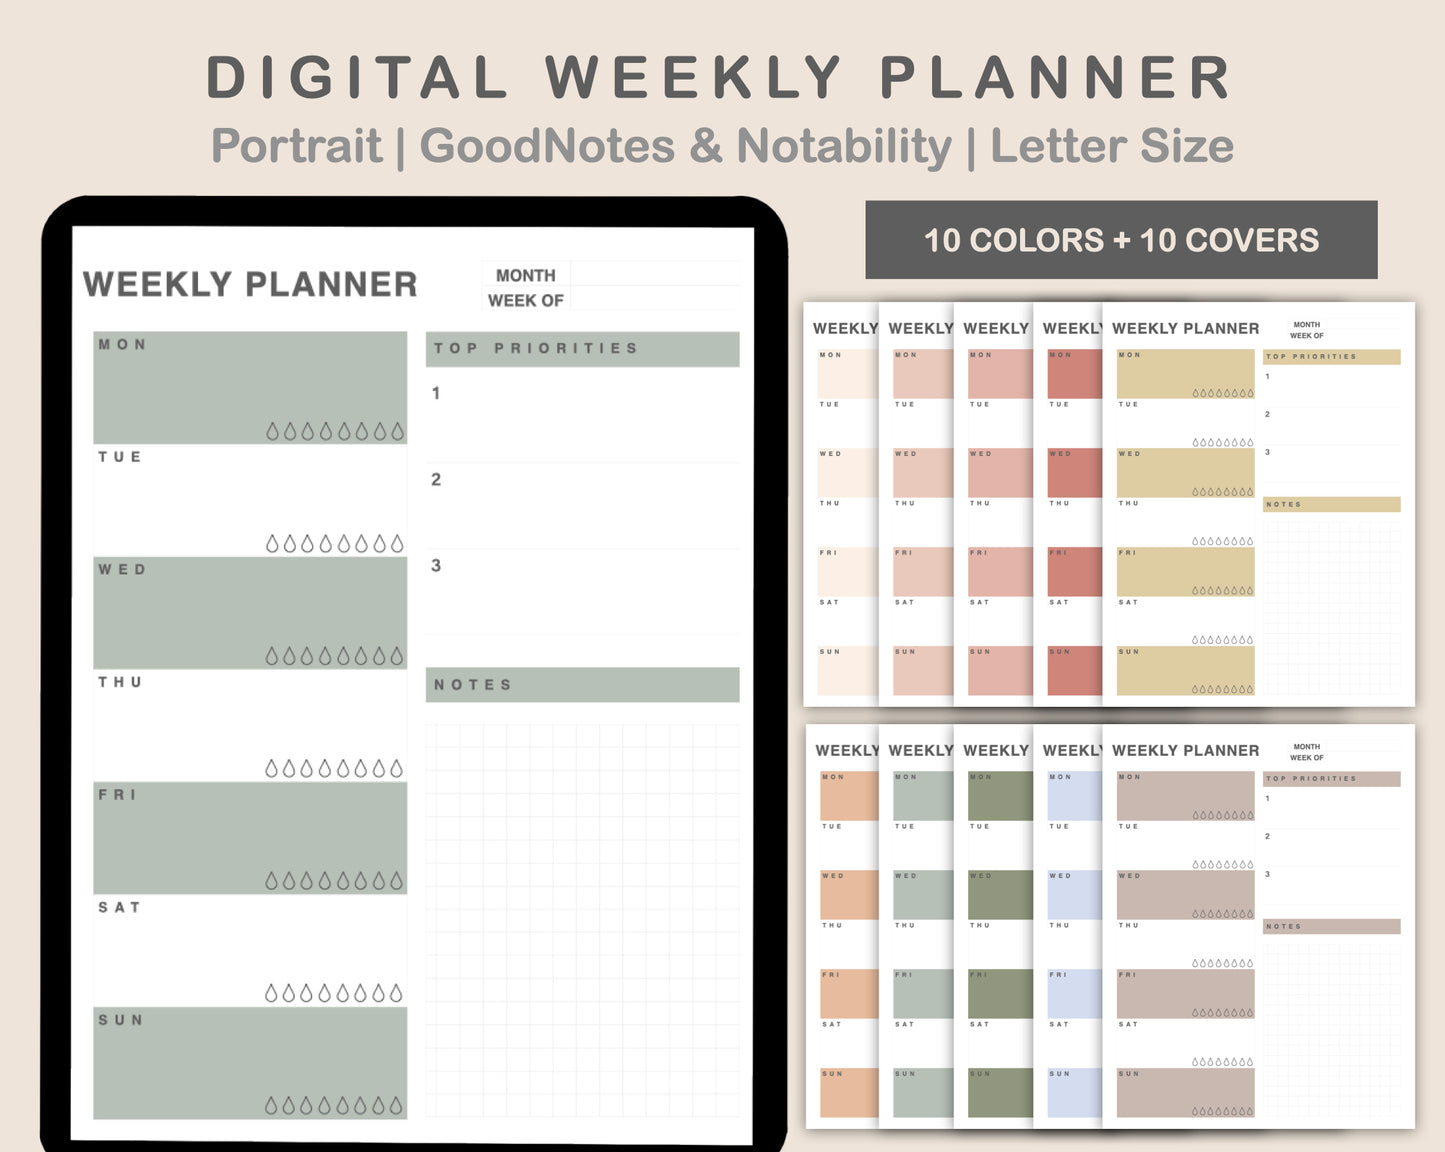 Weekly Planner, Priority - Portrait